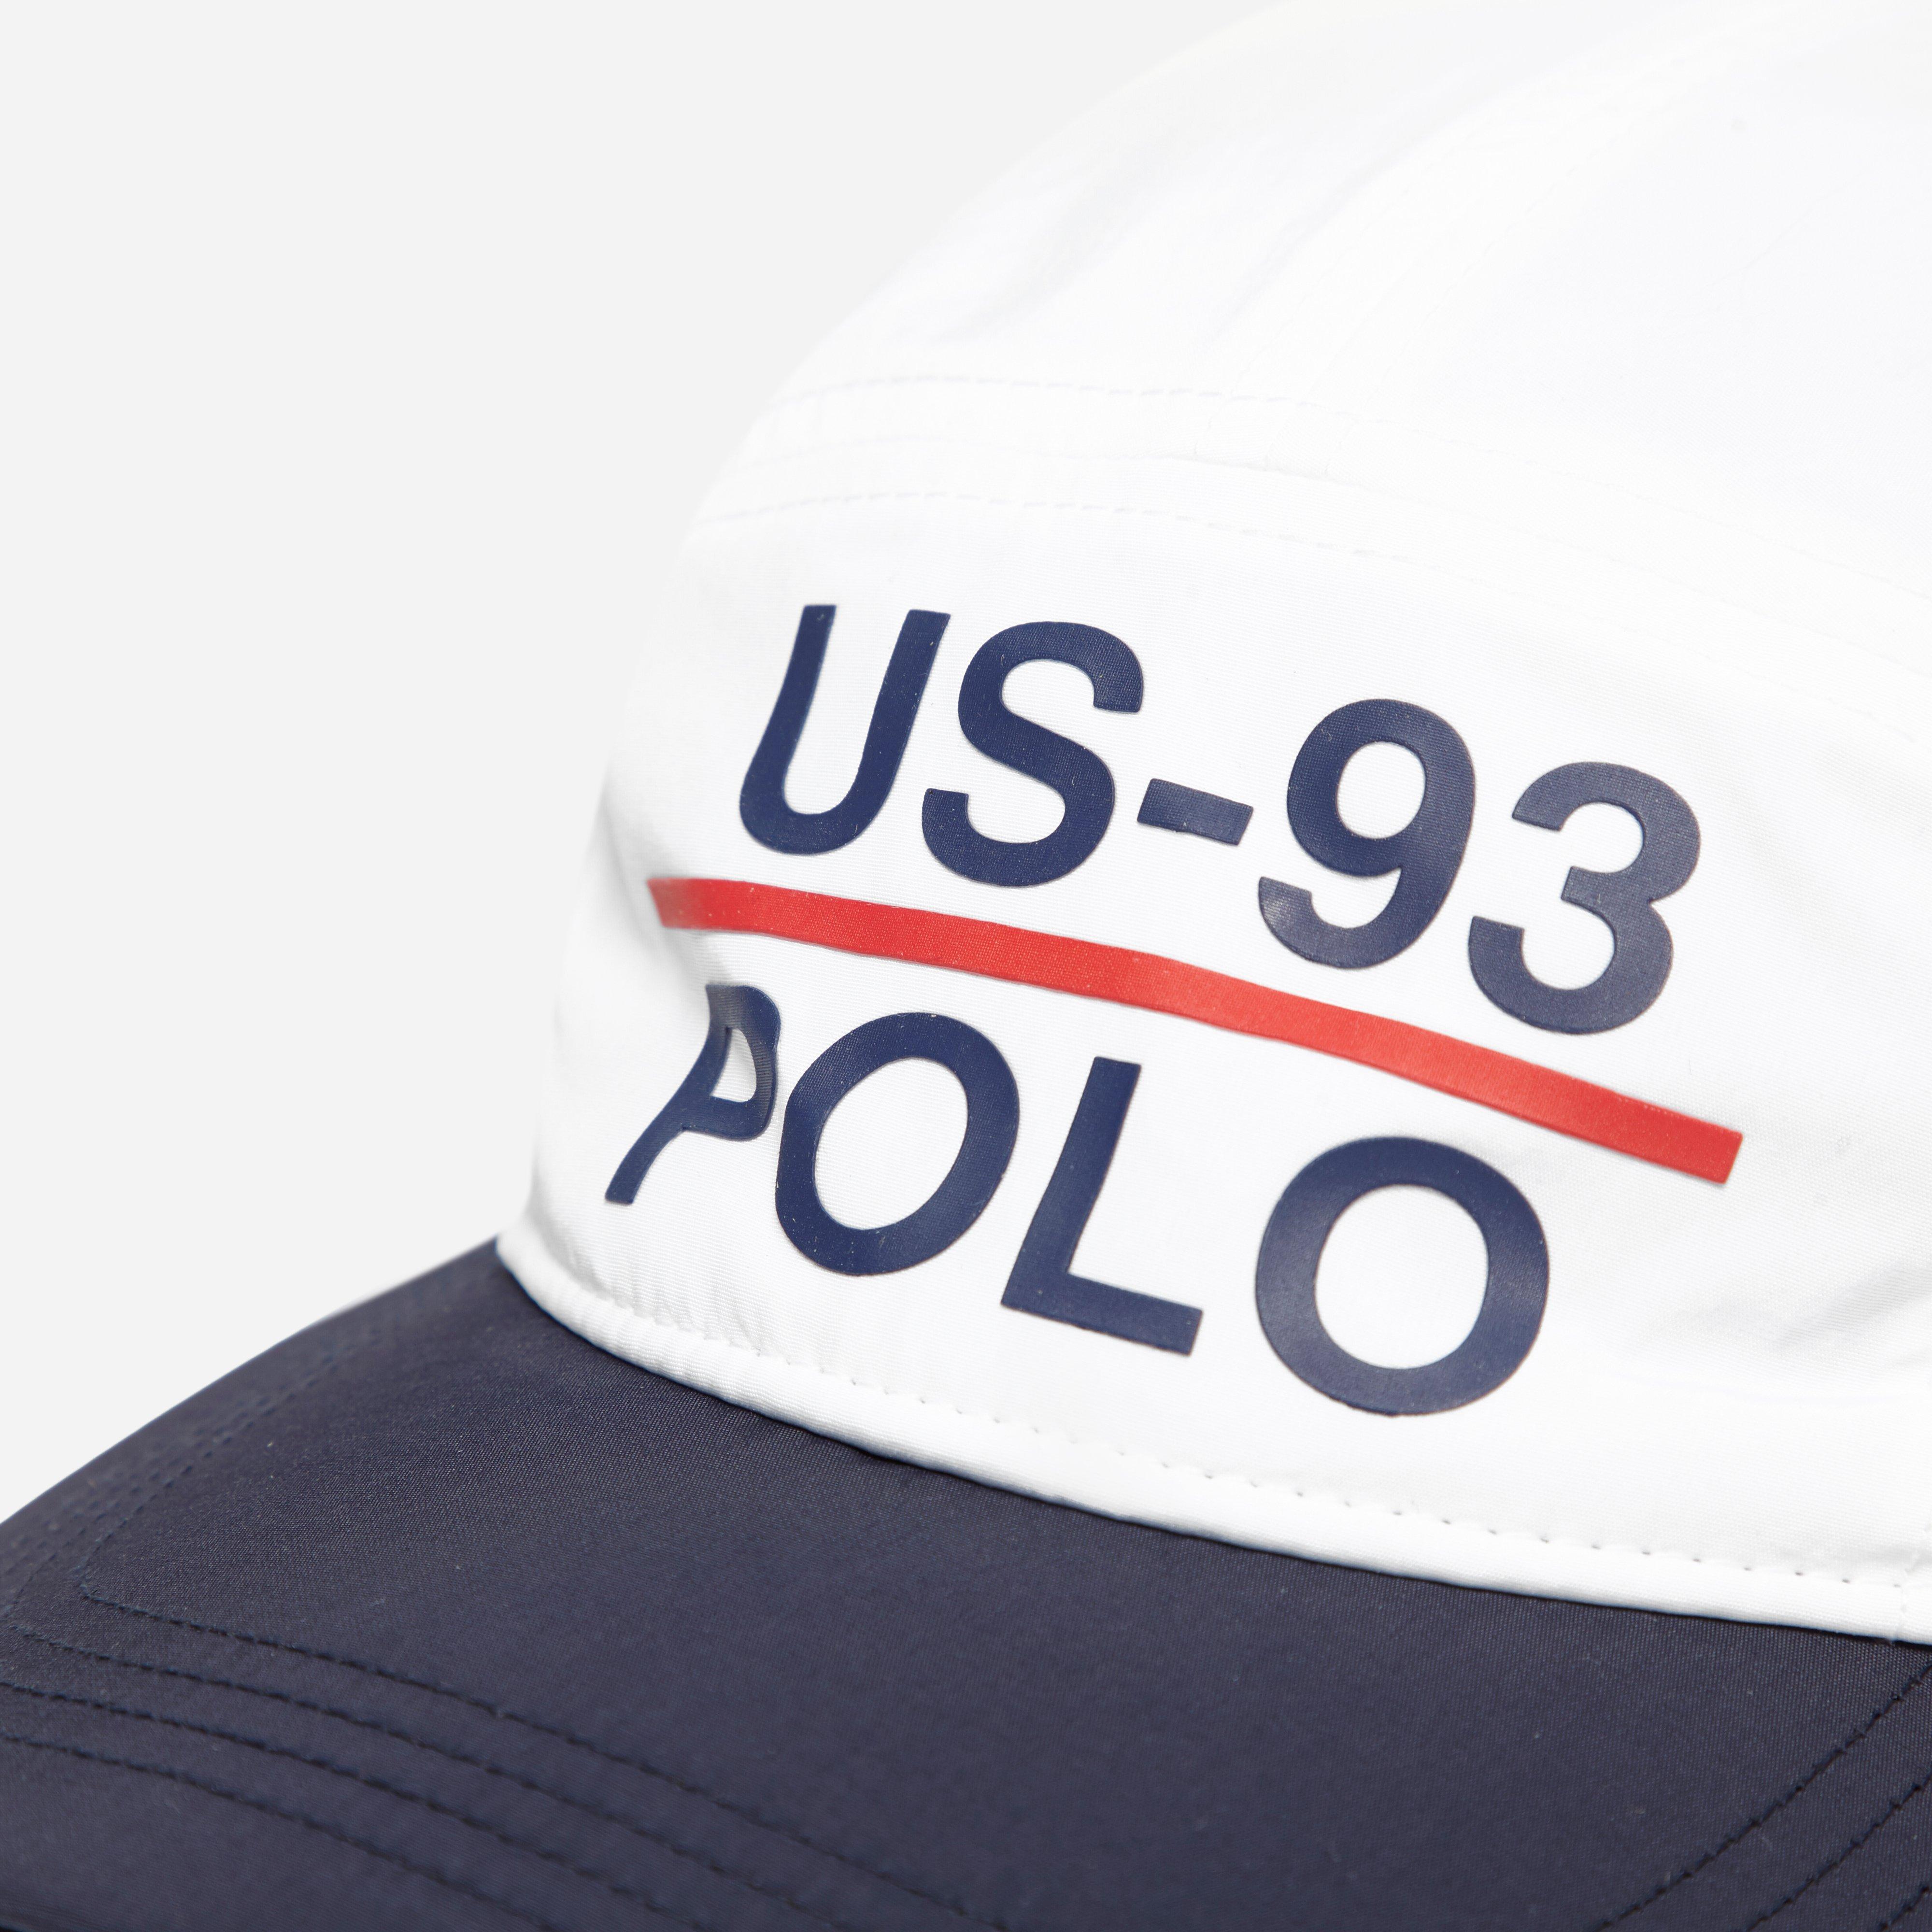 us-93 polo hat, Off 73%, www.scrimaglio.com